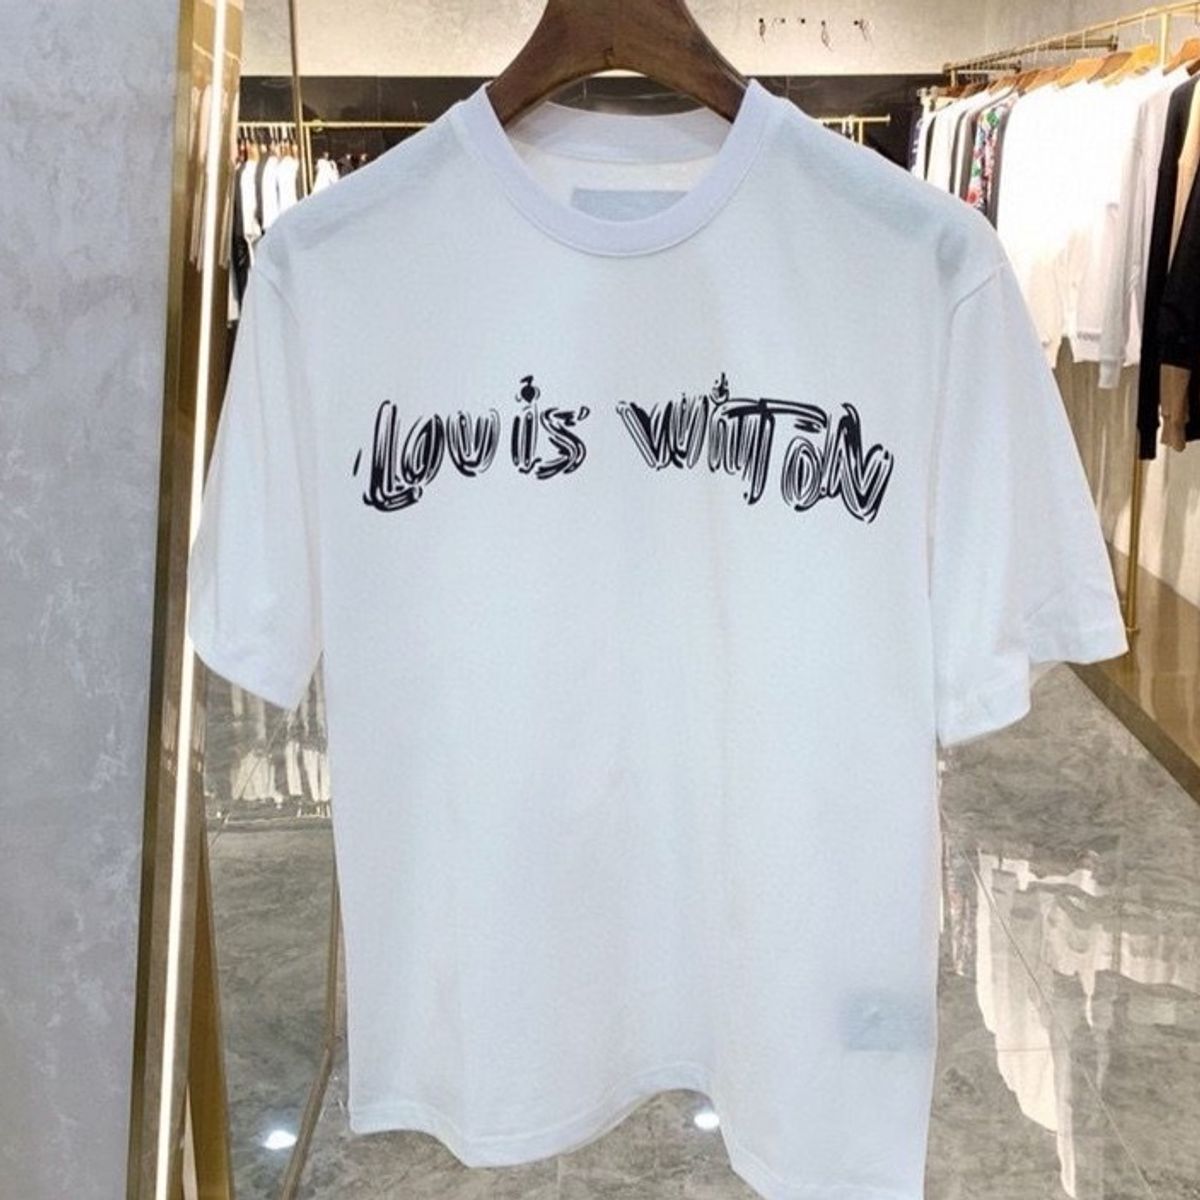 Camisa Louis Vuitton Multicolorida, Camiseta Masculina Louis Vuitton Usado  91708146